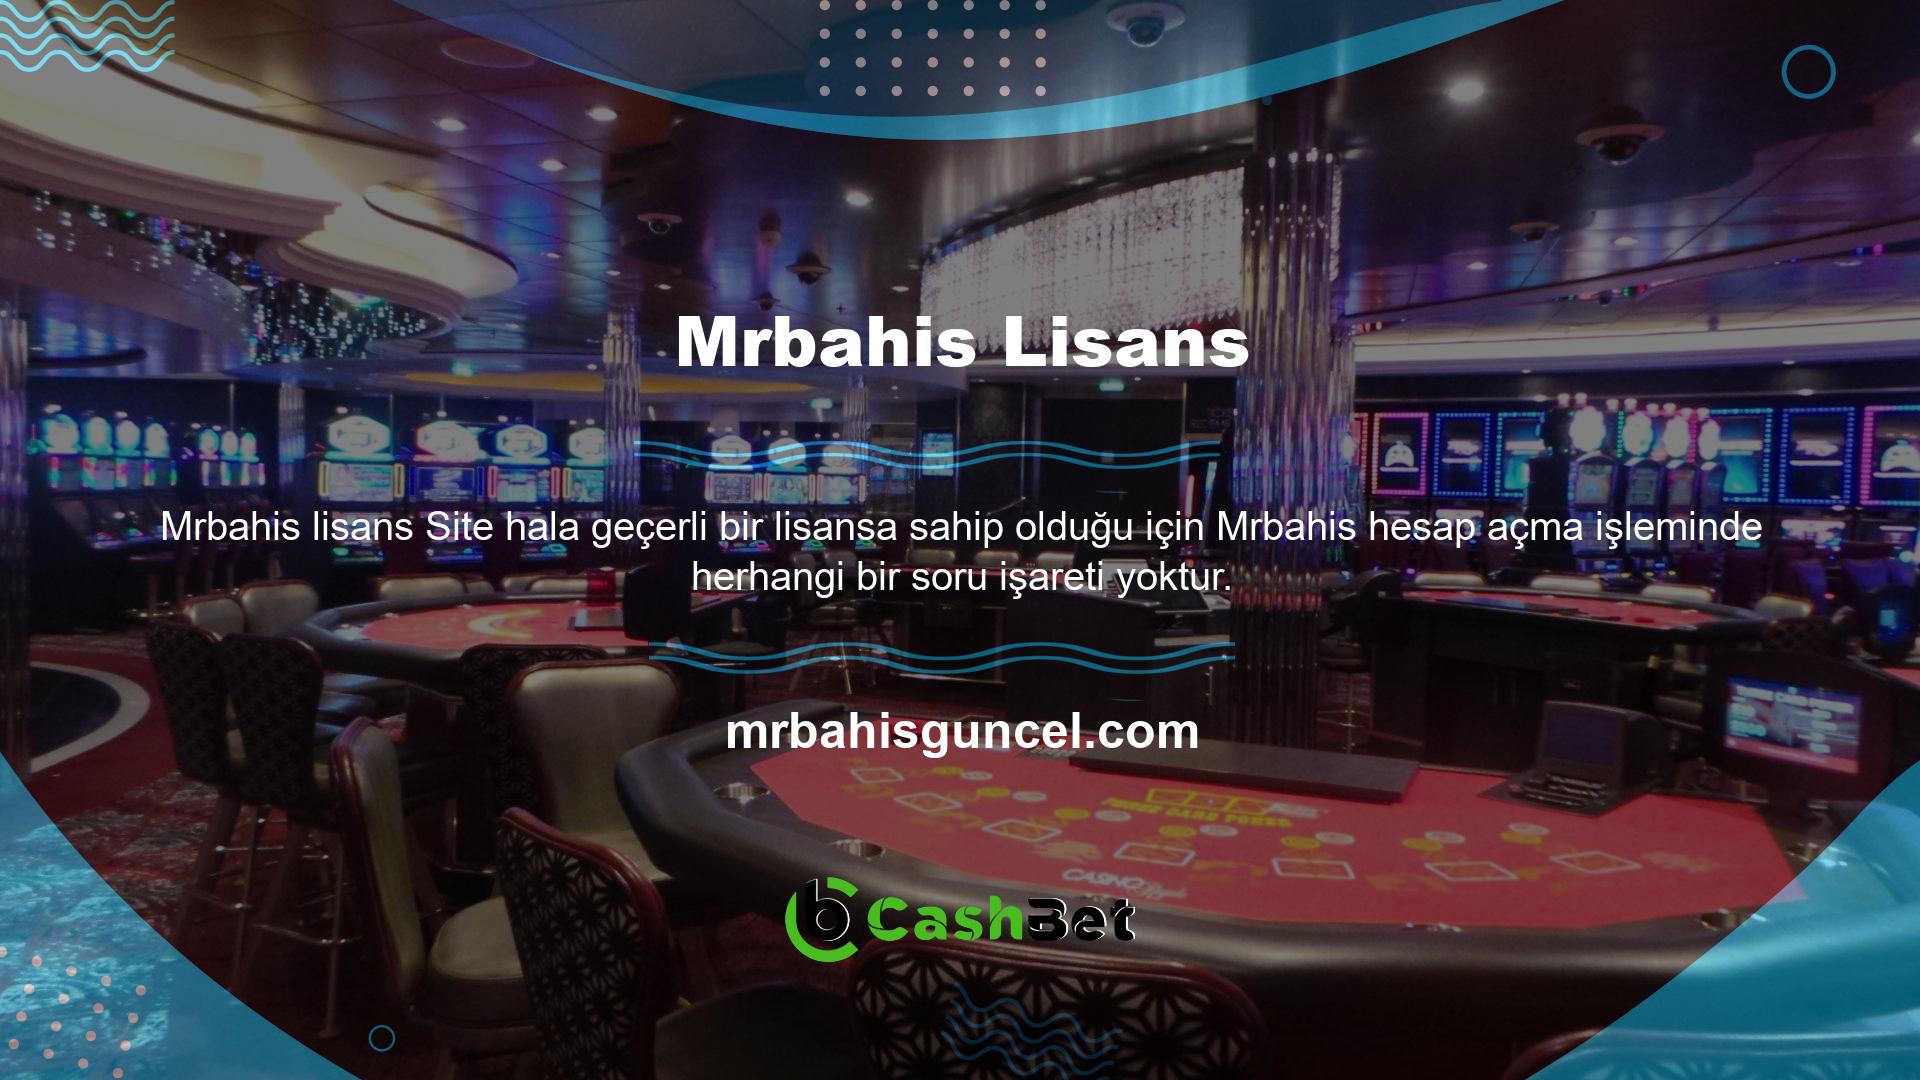 Casino siteleri hizmetlerini lisanslı üyelere sunmaktadır